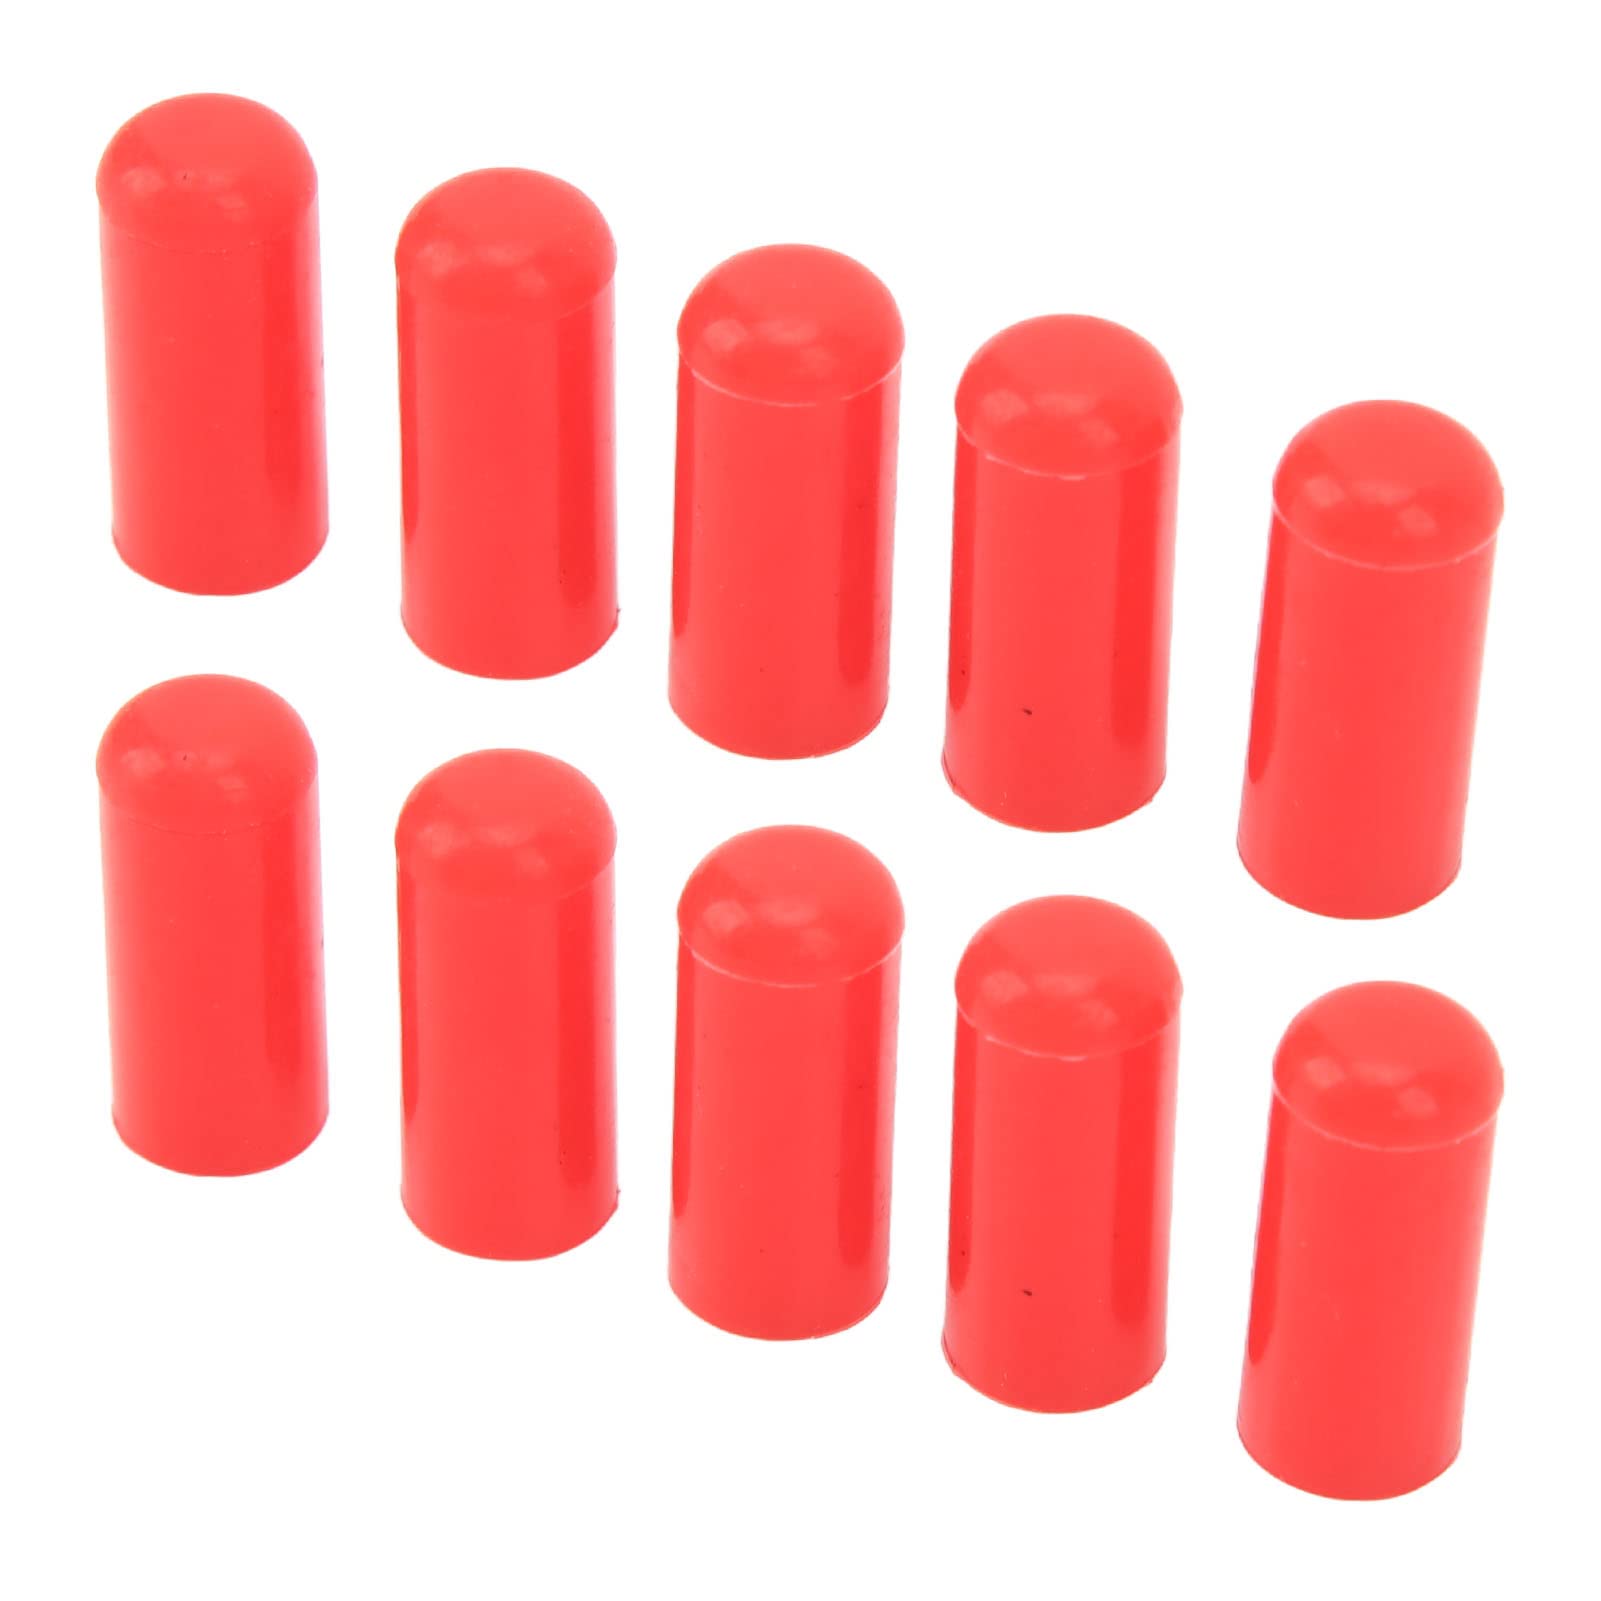 10 STÜCKE 4mm Kfz-Vakuumschlauchkappe Silikon-Ansaugschlauch Universelle Hitzebeständige Verschlusskappe Vakuumschlauch-Endstopfen für BOV-Rohrleitung (Rot) von KIMISS